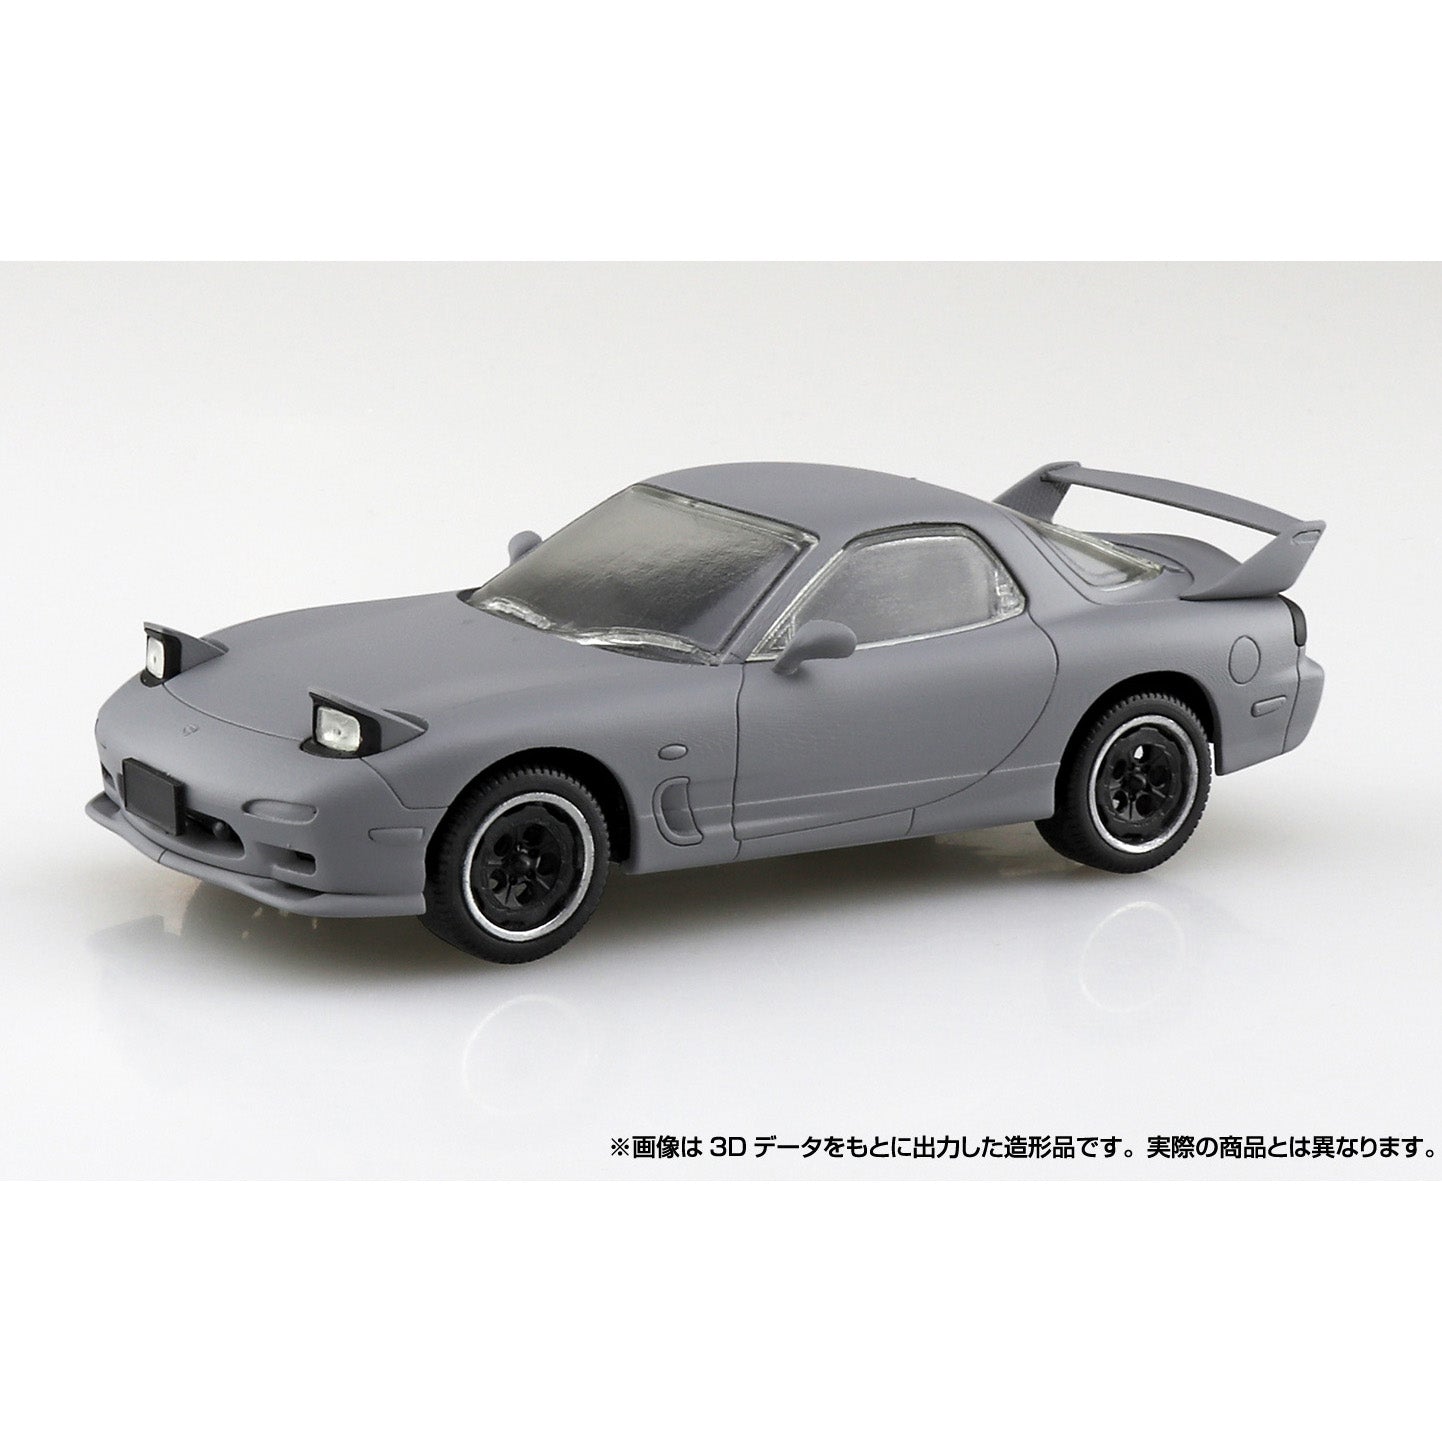 Aoshima - The Snap Kit No. CM2 - Initial D - Keisuke Takahashi's FD Model Kit (1/32 Scale) - Marvelous Toys